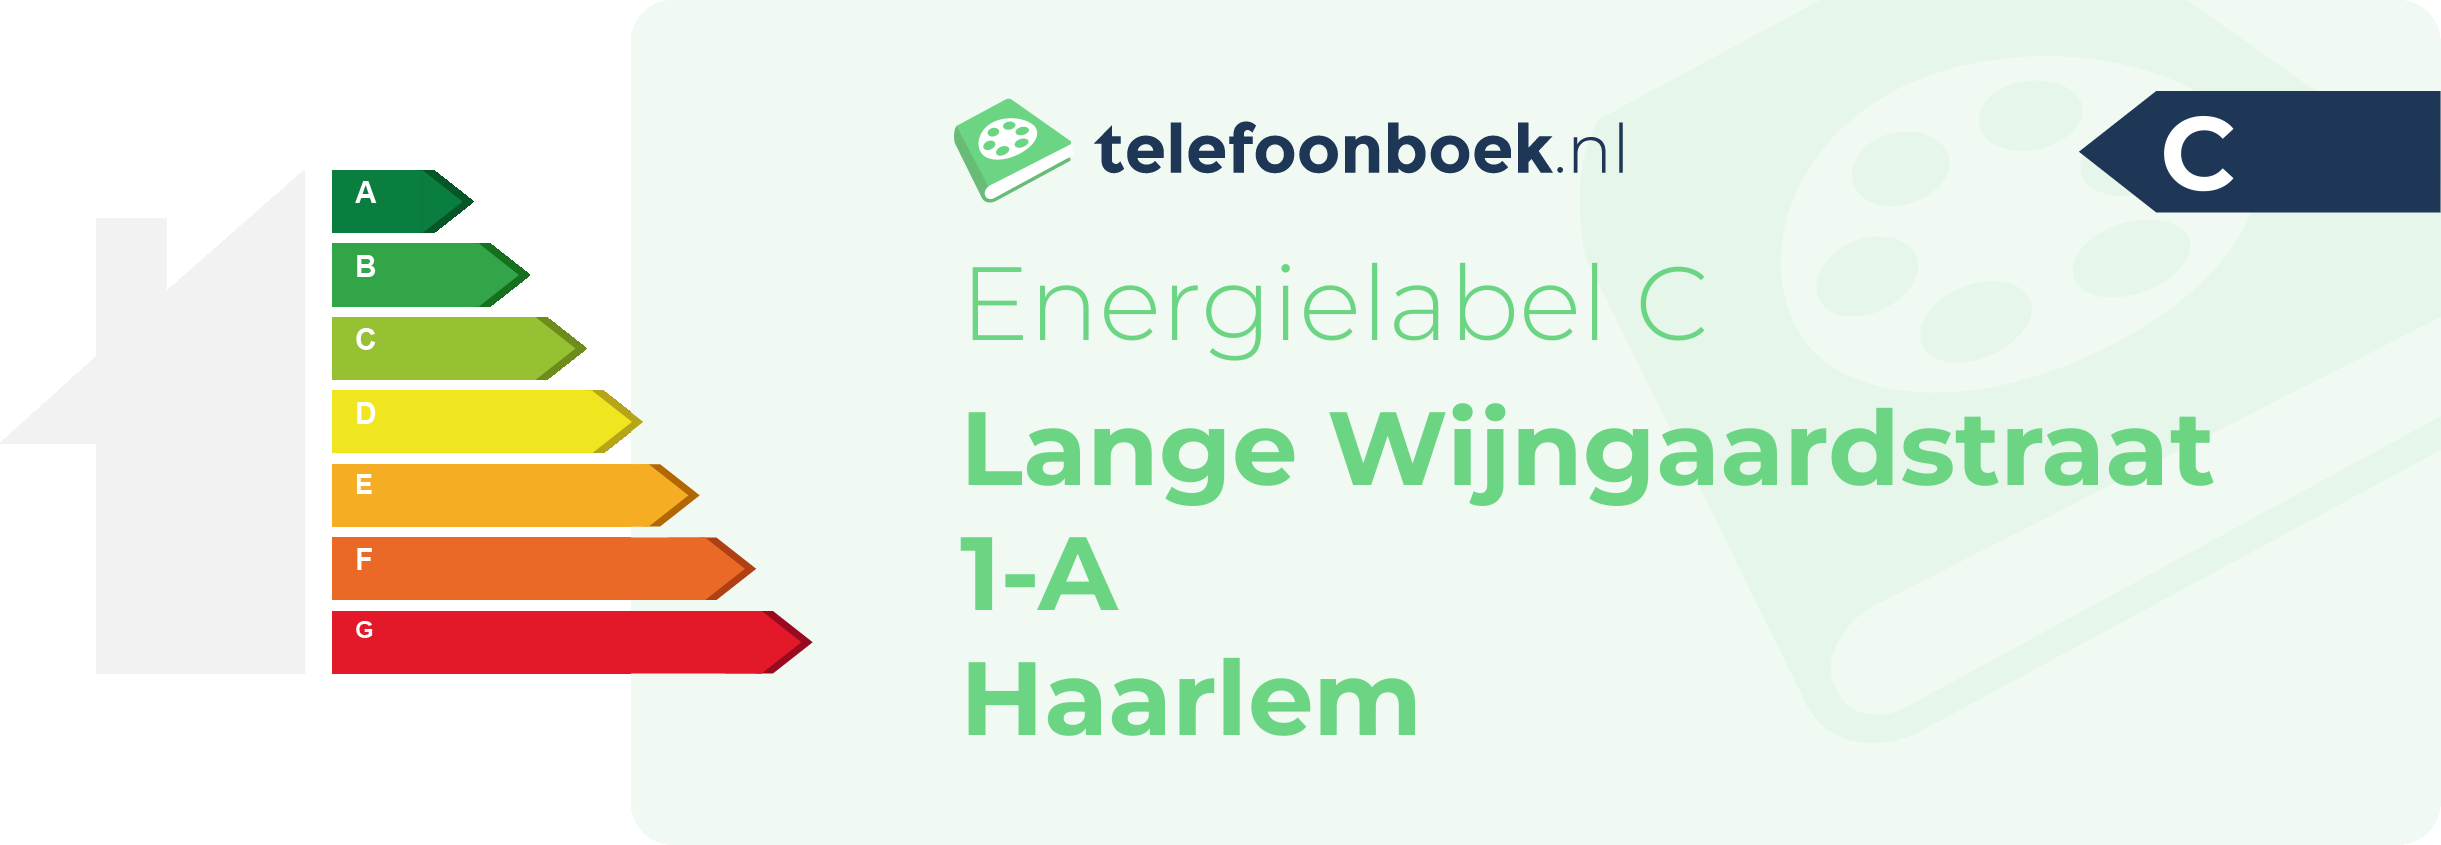 Energielabel Lange Wijngaardstraat 1-A Haarlem